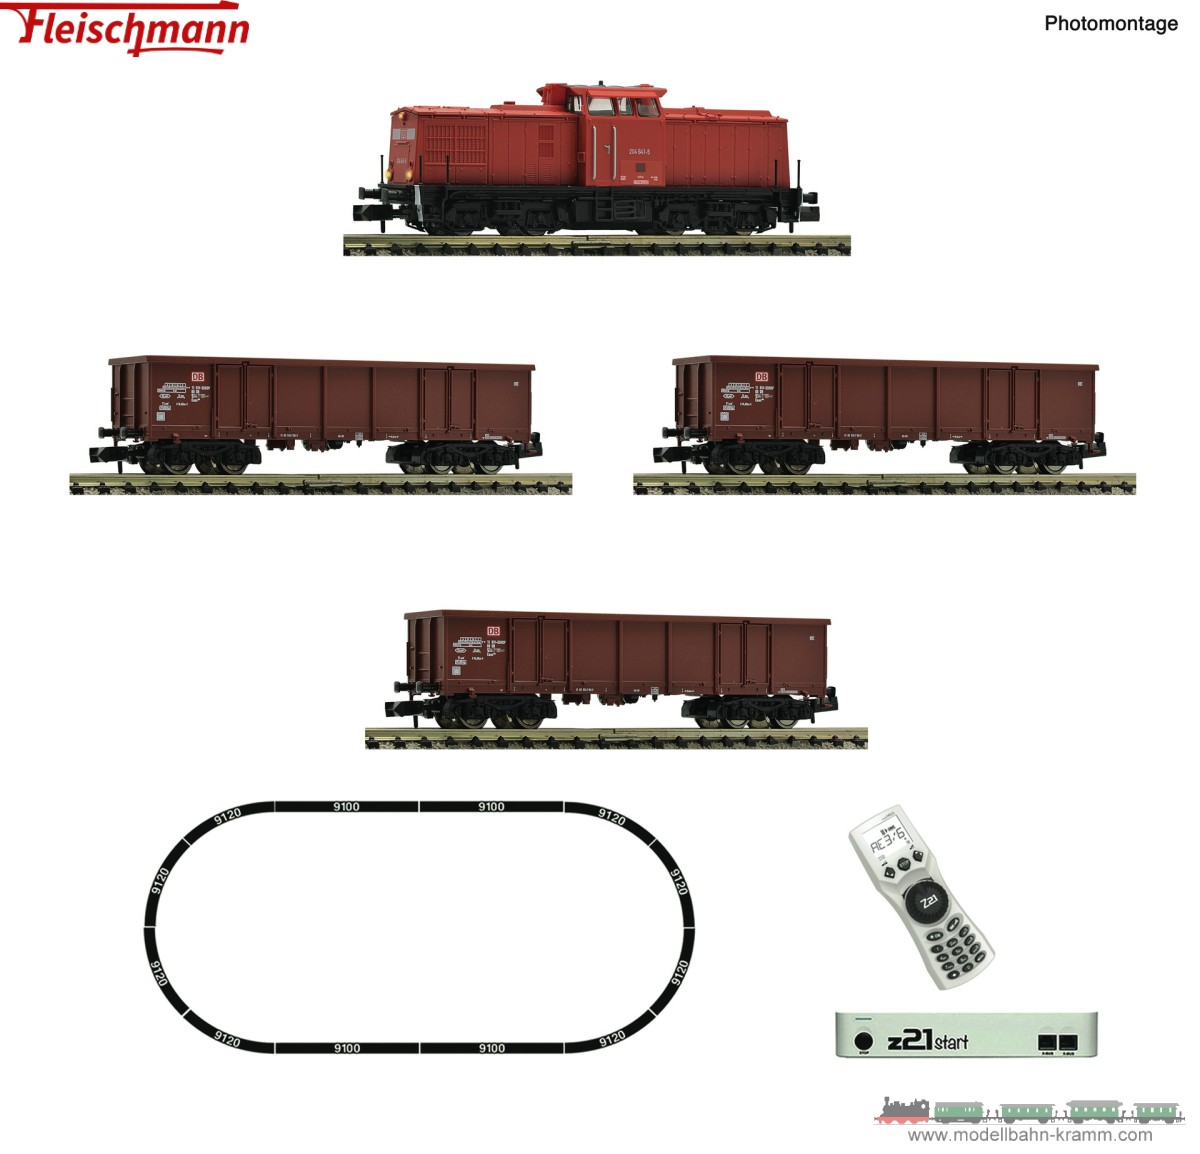 Fleischmann 5170005, EAN 4005575261739: N z21 start Digitalset: Diesellokomotive BR 204 mit Güterzug, DB AG V-VI